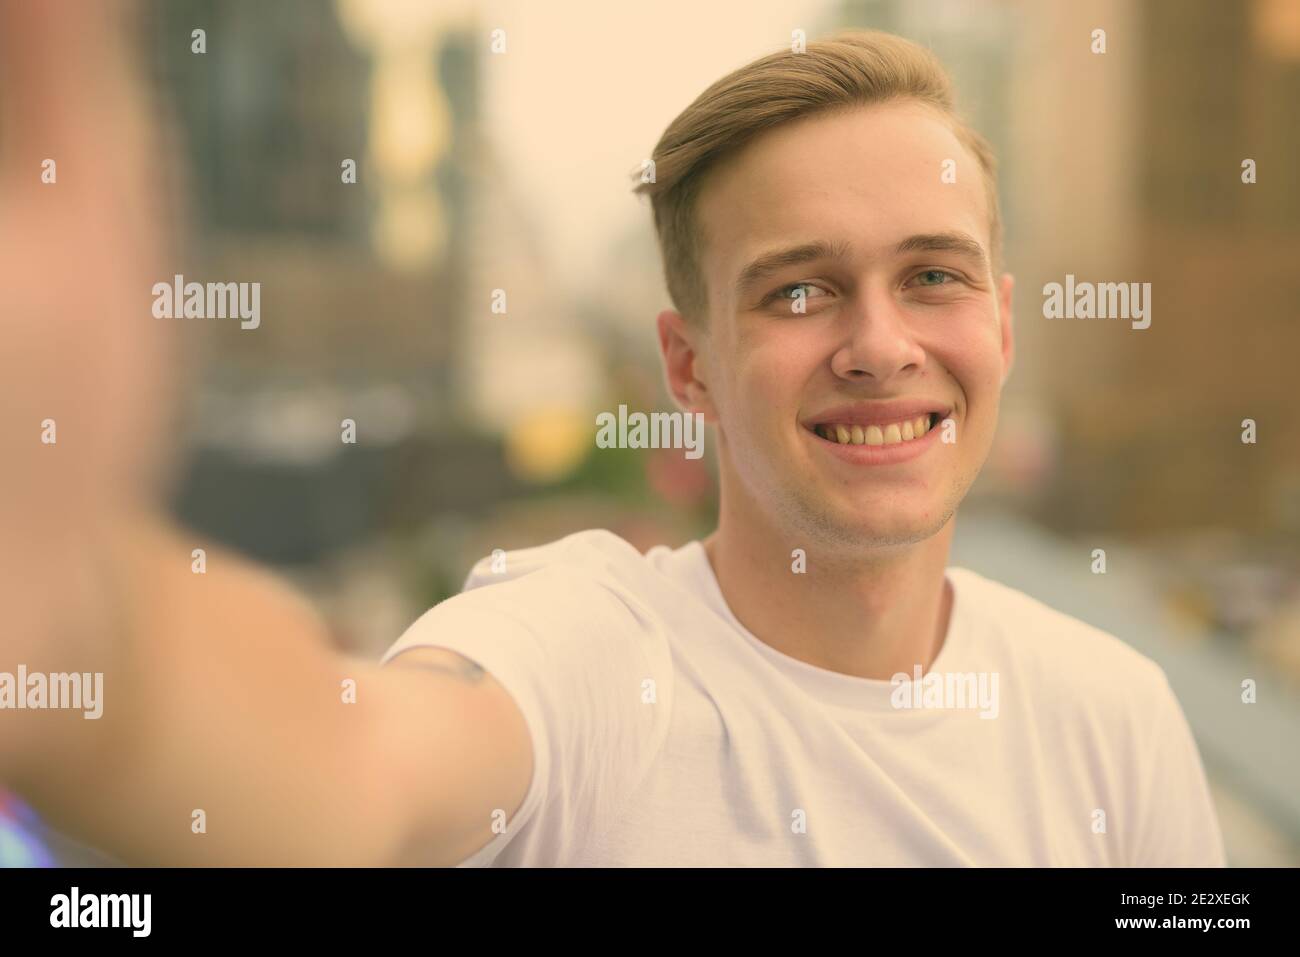 Junger stattlicher Mann mit blonden Haaren gegen den Blick auf die Stadt Stockfoto